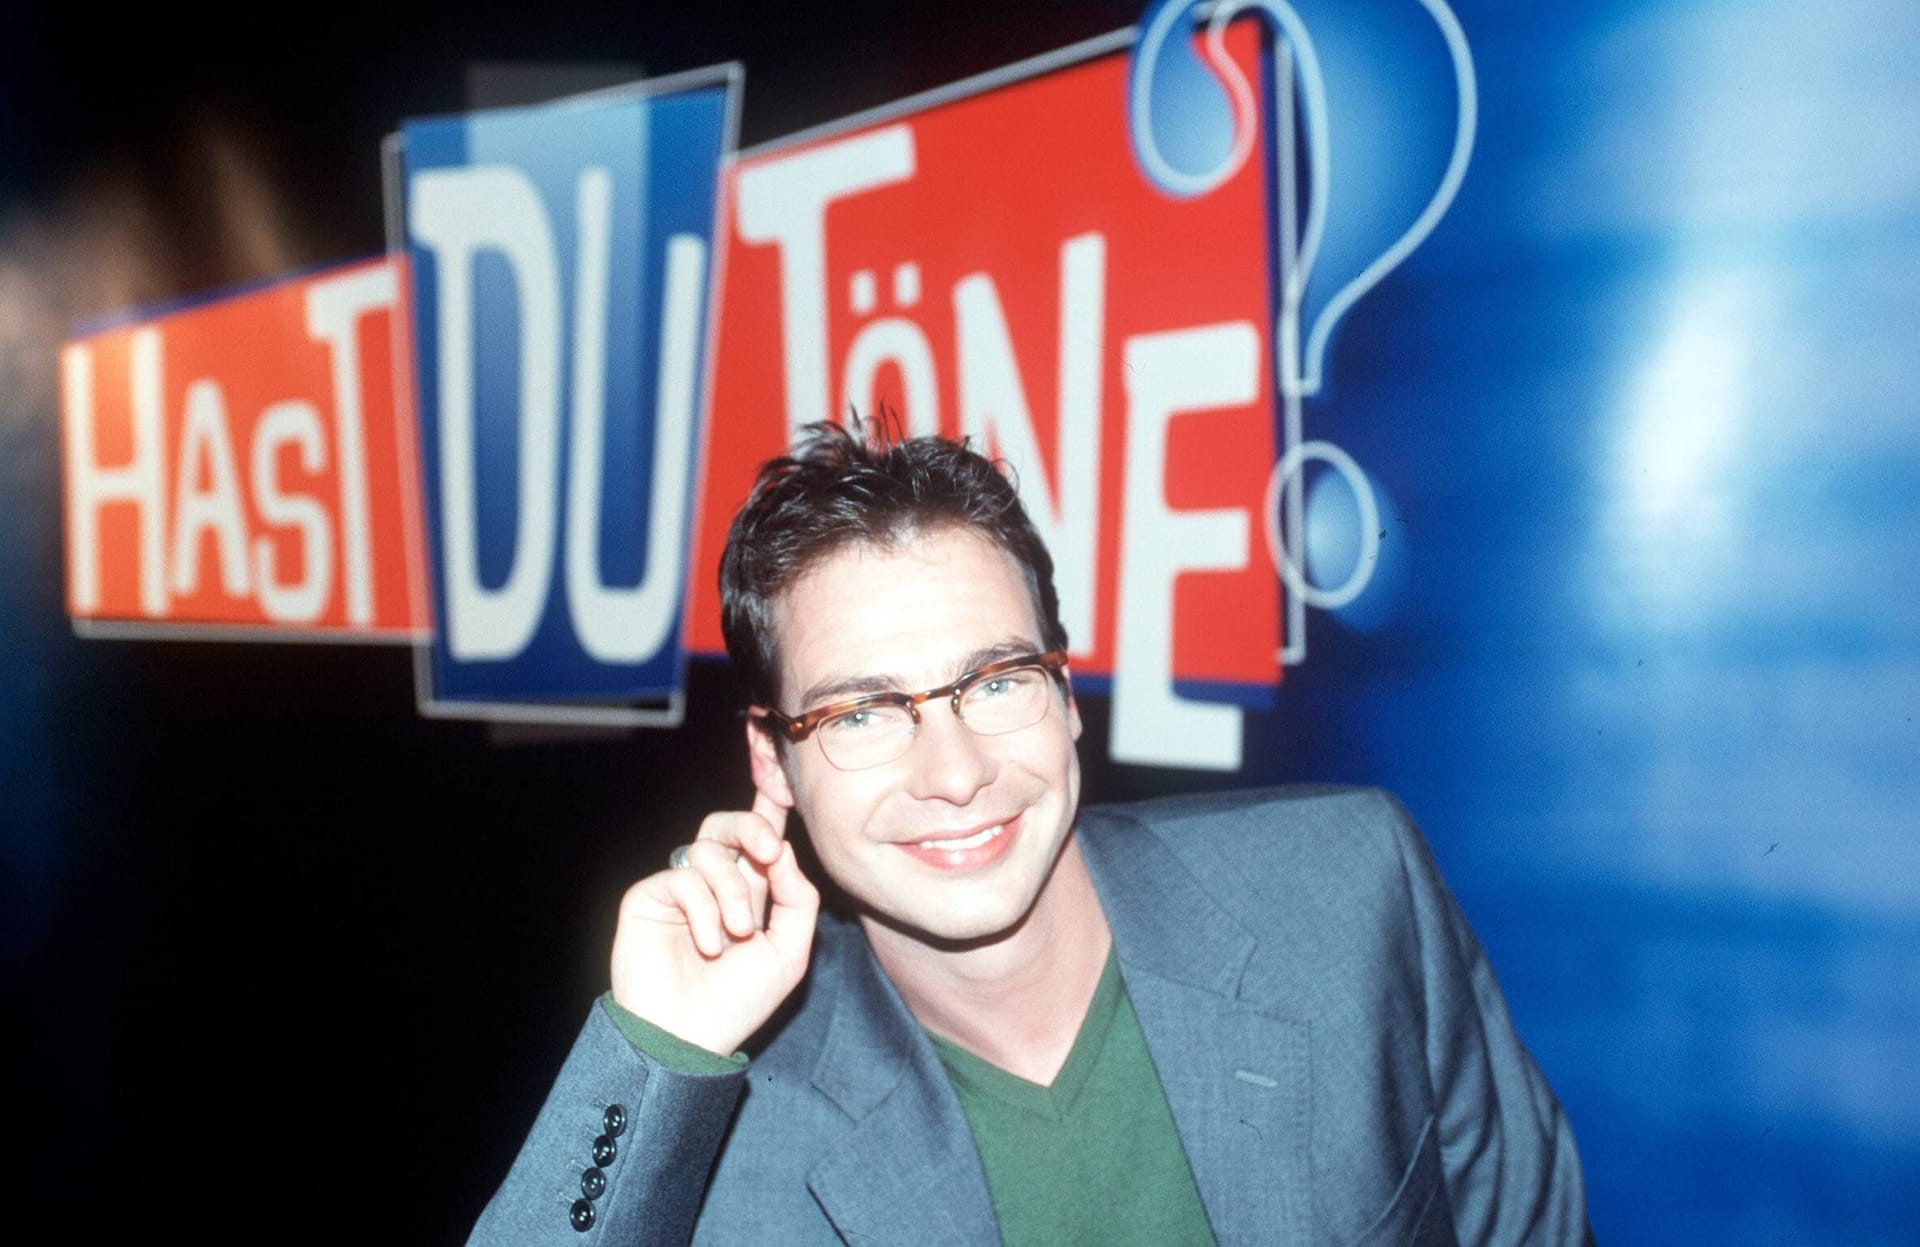 Am 6. Dezember 1991 feierte "Hast Du Töne" mit Moderator Matthias Opdenhövel Premiere bei Vox.